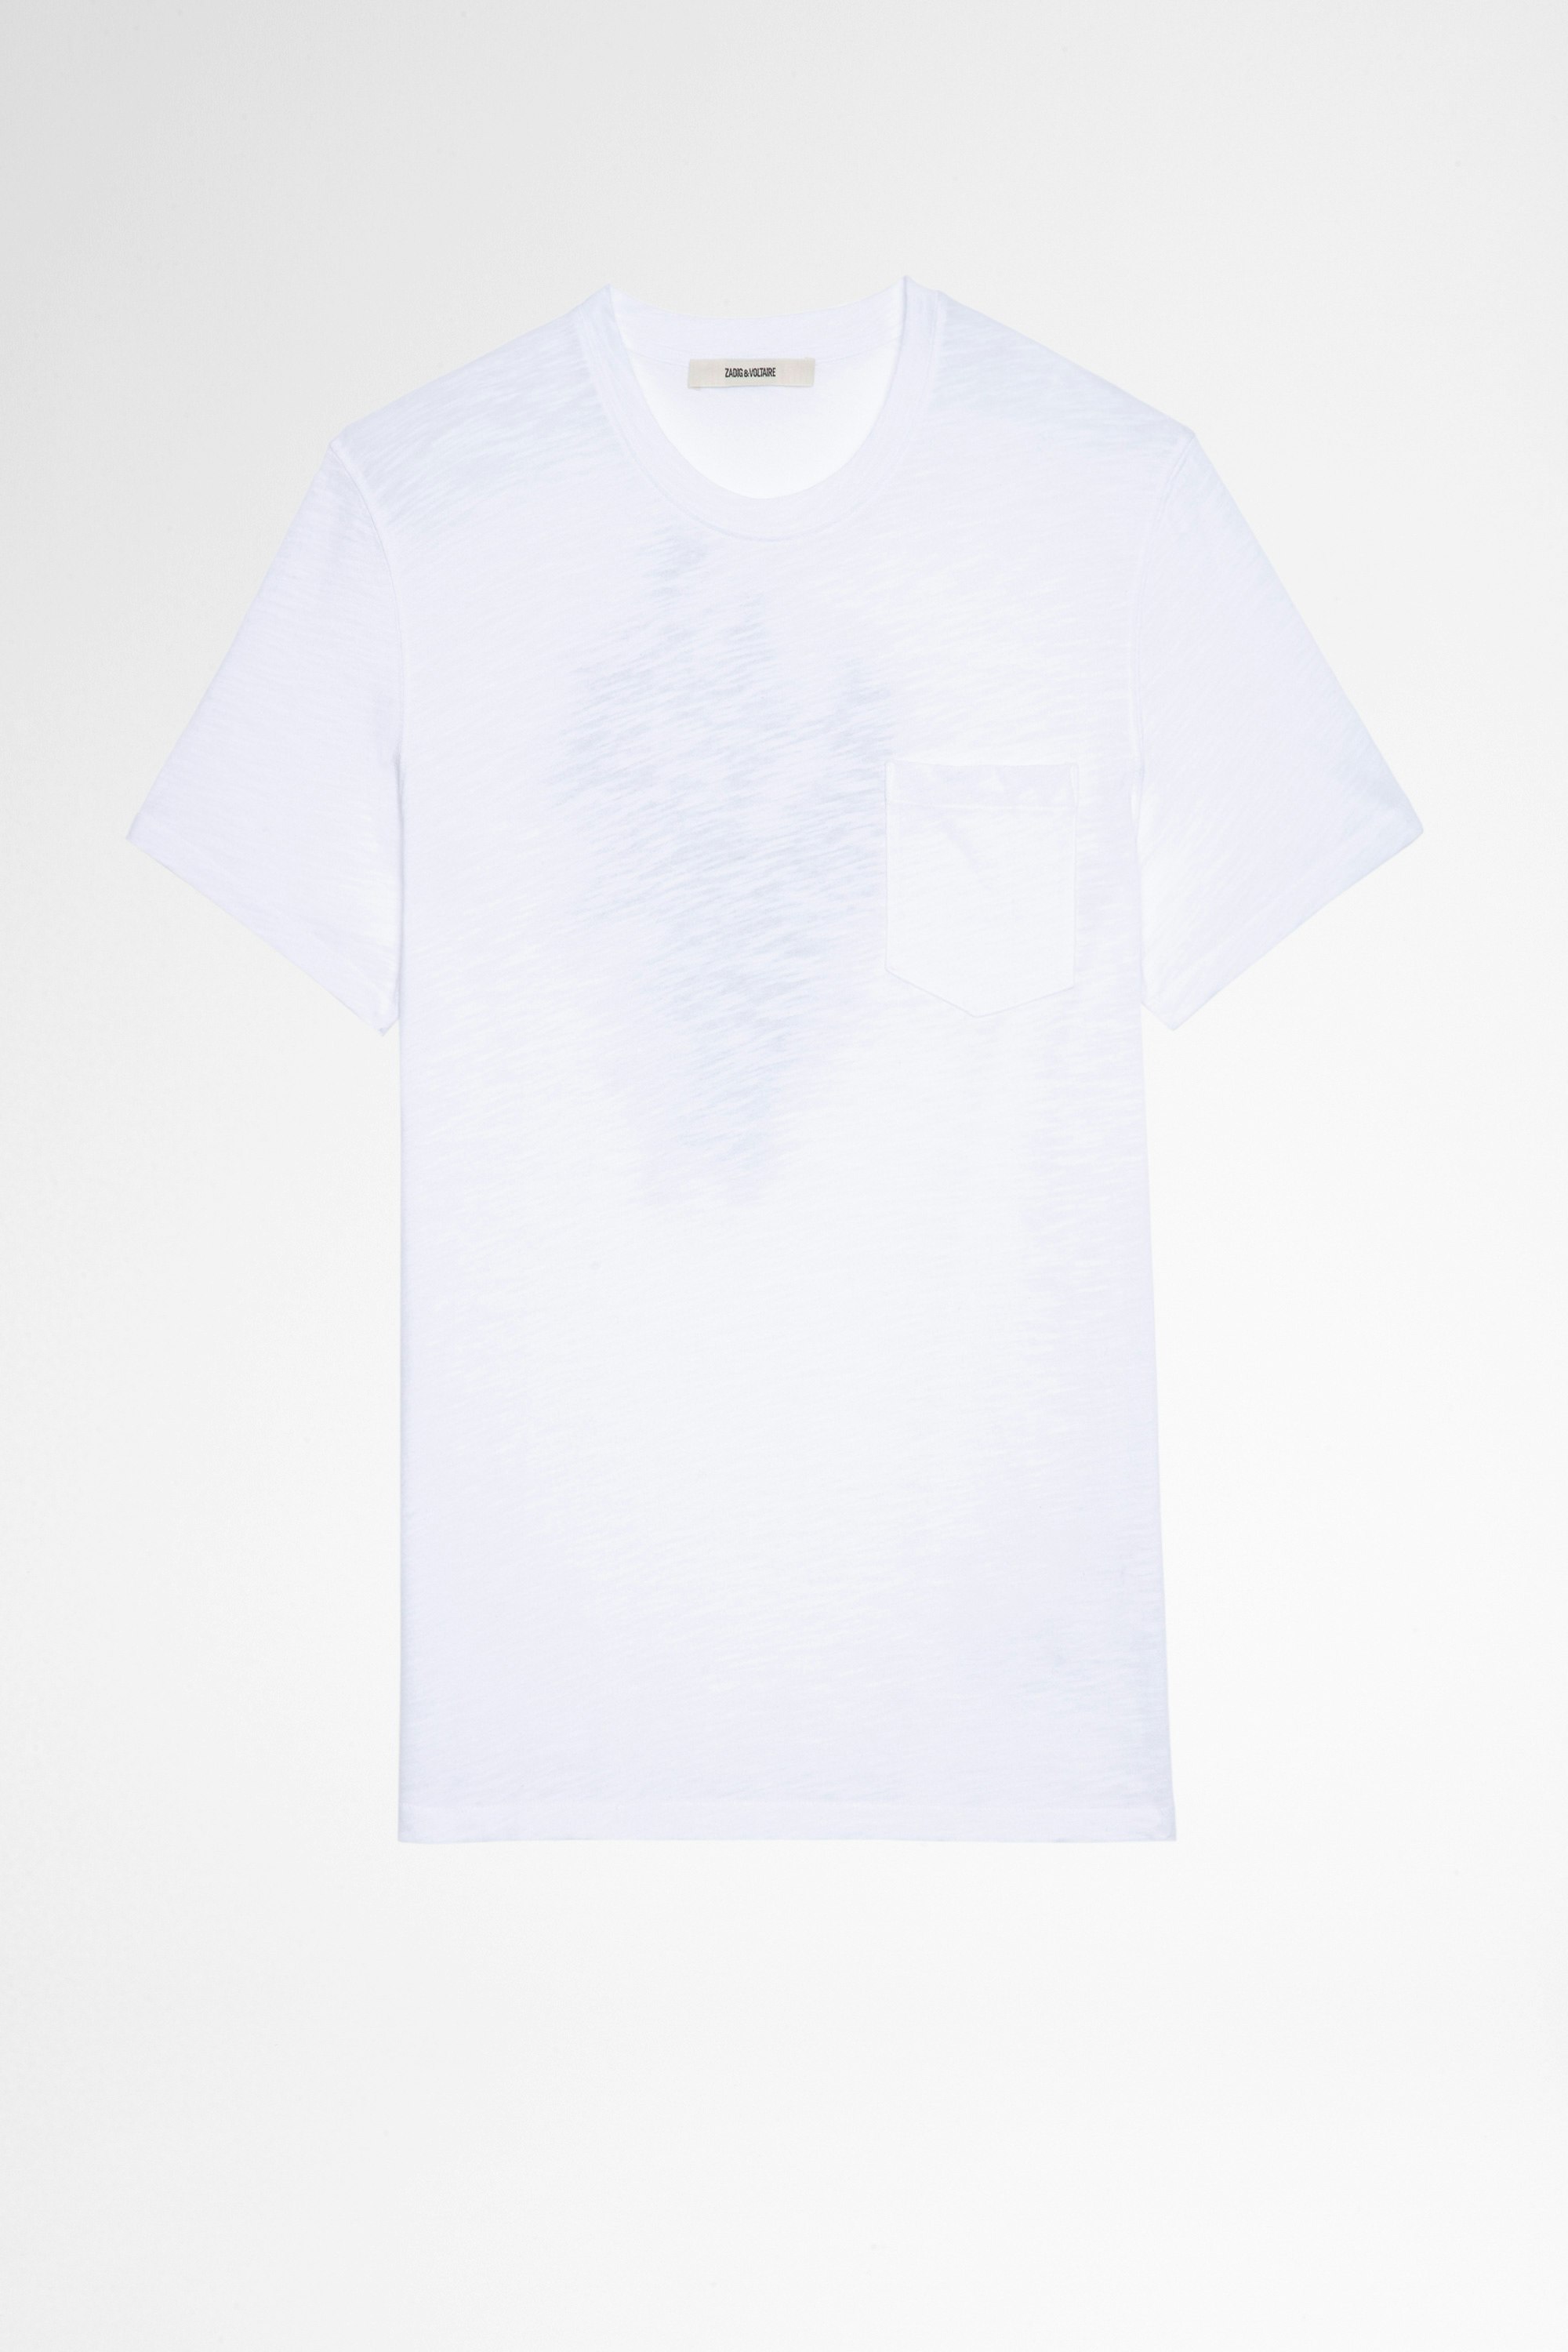 Toby T-Shirt Men's short-sleeved t-shirt in white cotton